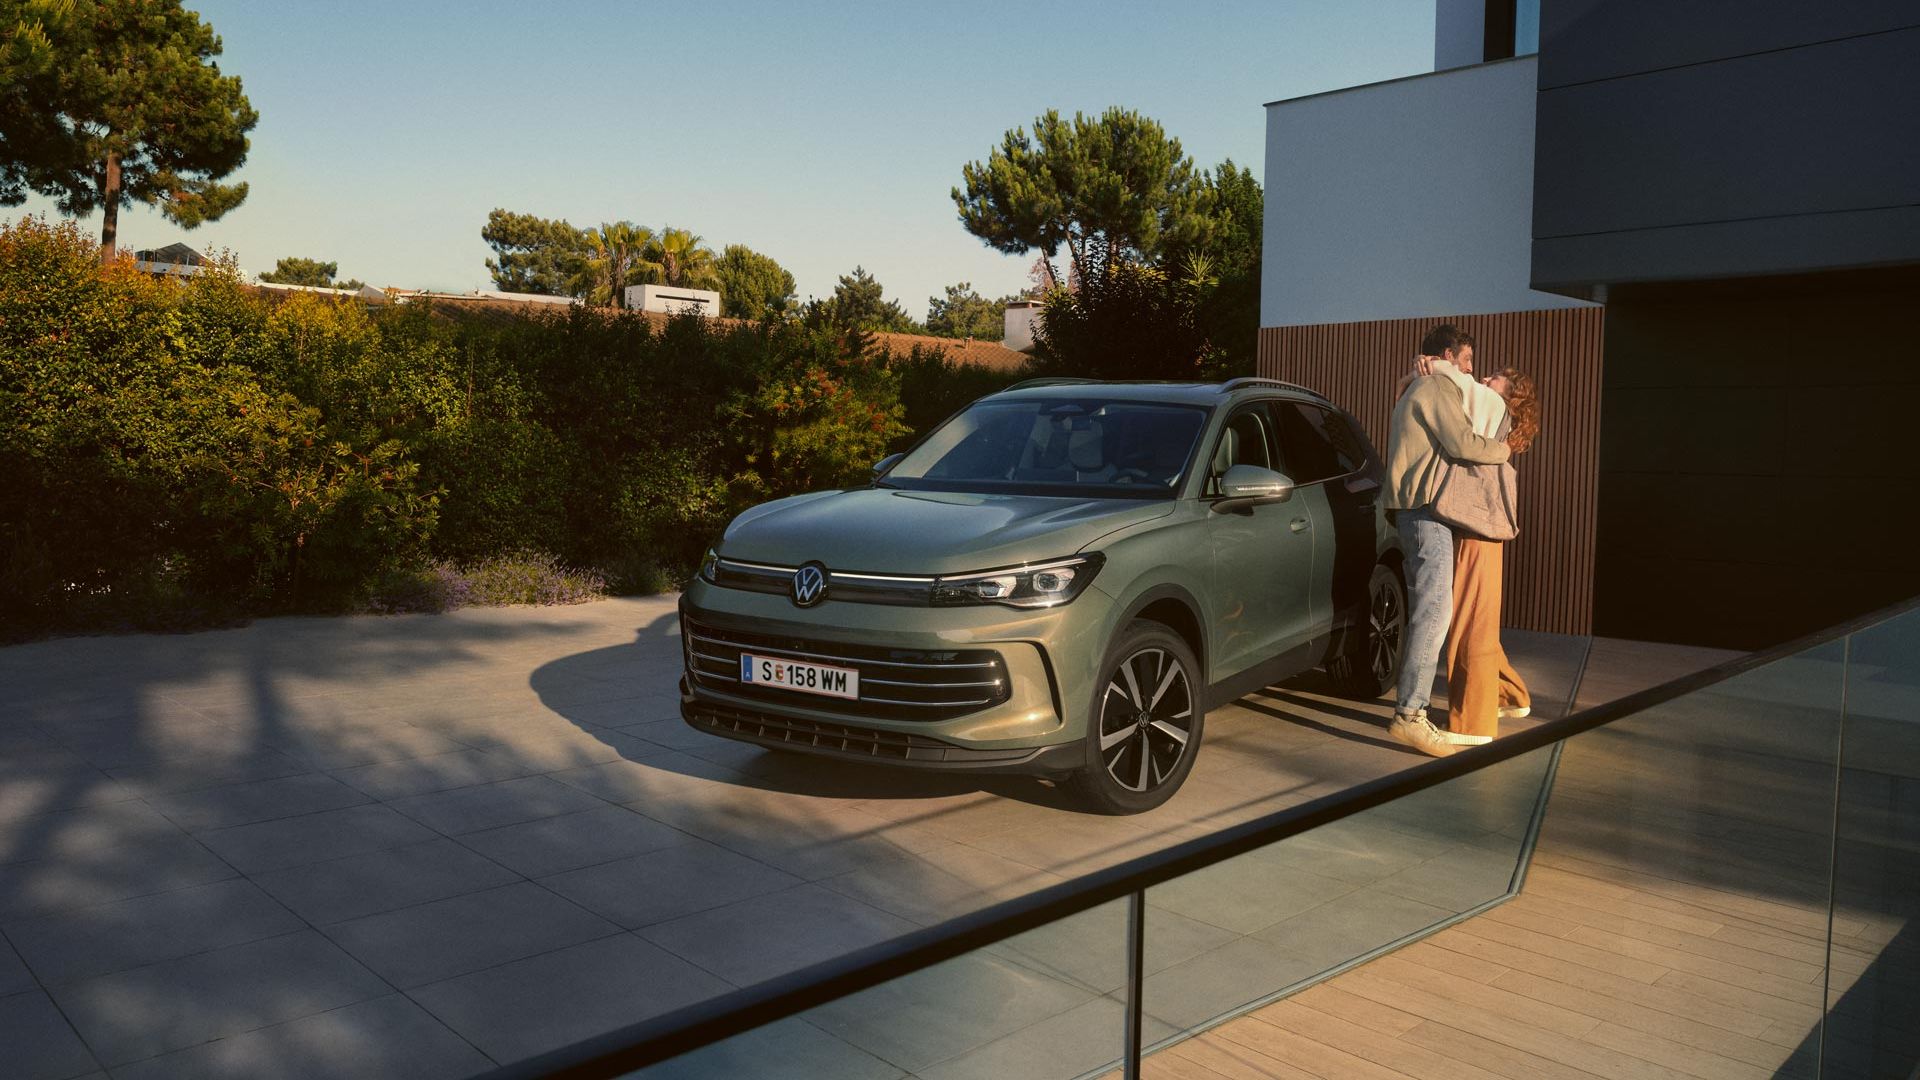 Grüner VW Tiguan parkt in Frontansicht auf der Einfahrt eines modernen Wohnhauses. Ein junges Paar steht daneben und umarmt sich.